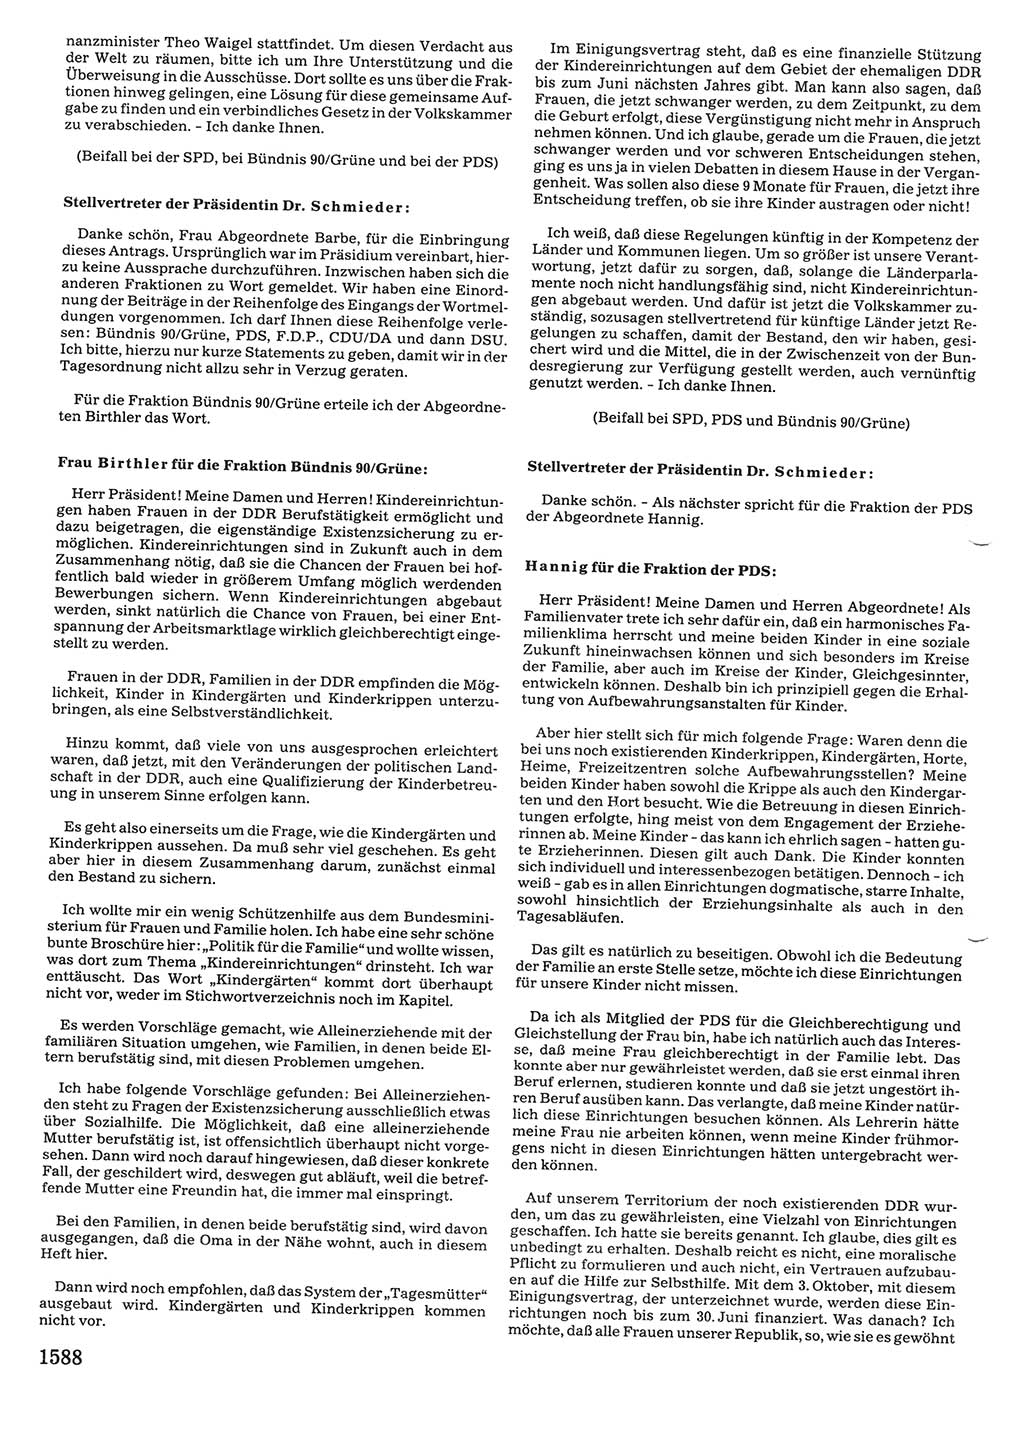 Tagungen der Volkskammer (VK) der Deutschen Demokratischen Republik (DDR), 10. Wahlperiode 1990, Seite 1588 (VK. DDR 10. WP. 1990, Prot. Tg. 1-38, 5.4.-2.10.1990, S. 1588)